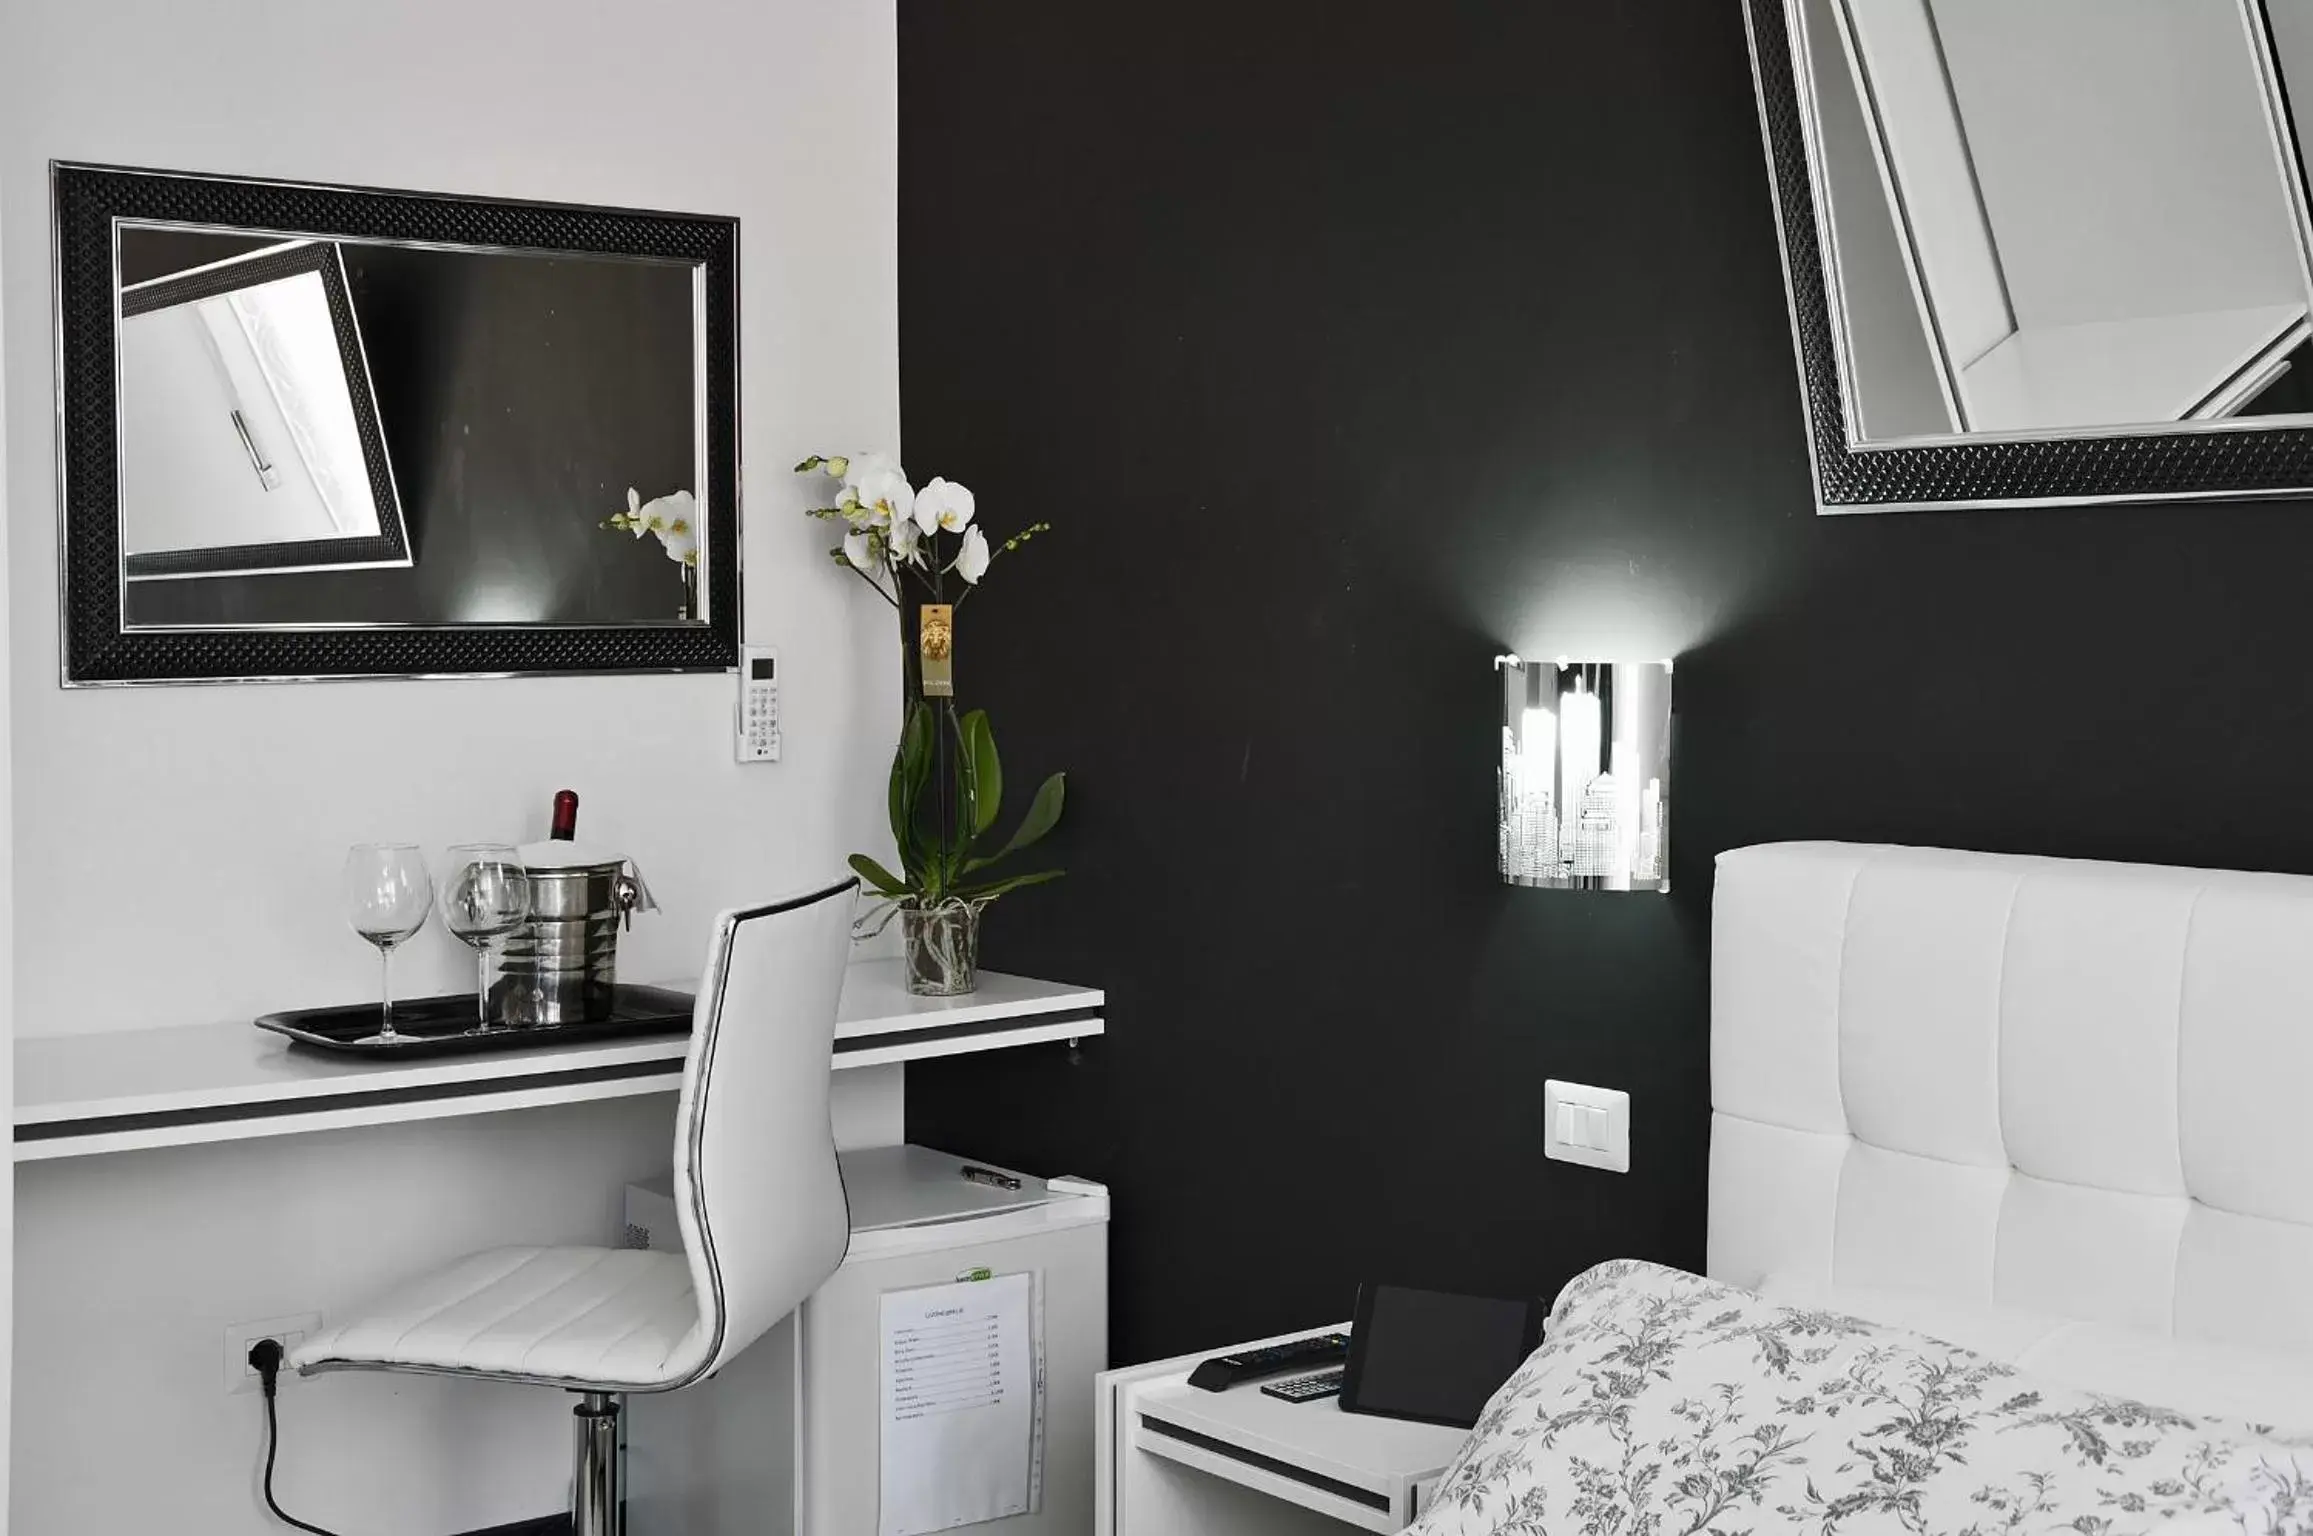 Bedroom, TV/Entertainment Center in Black & White G&G